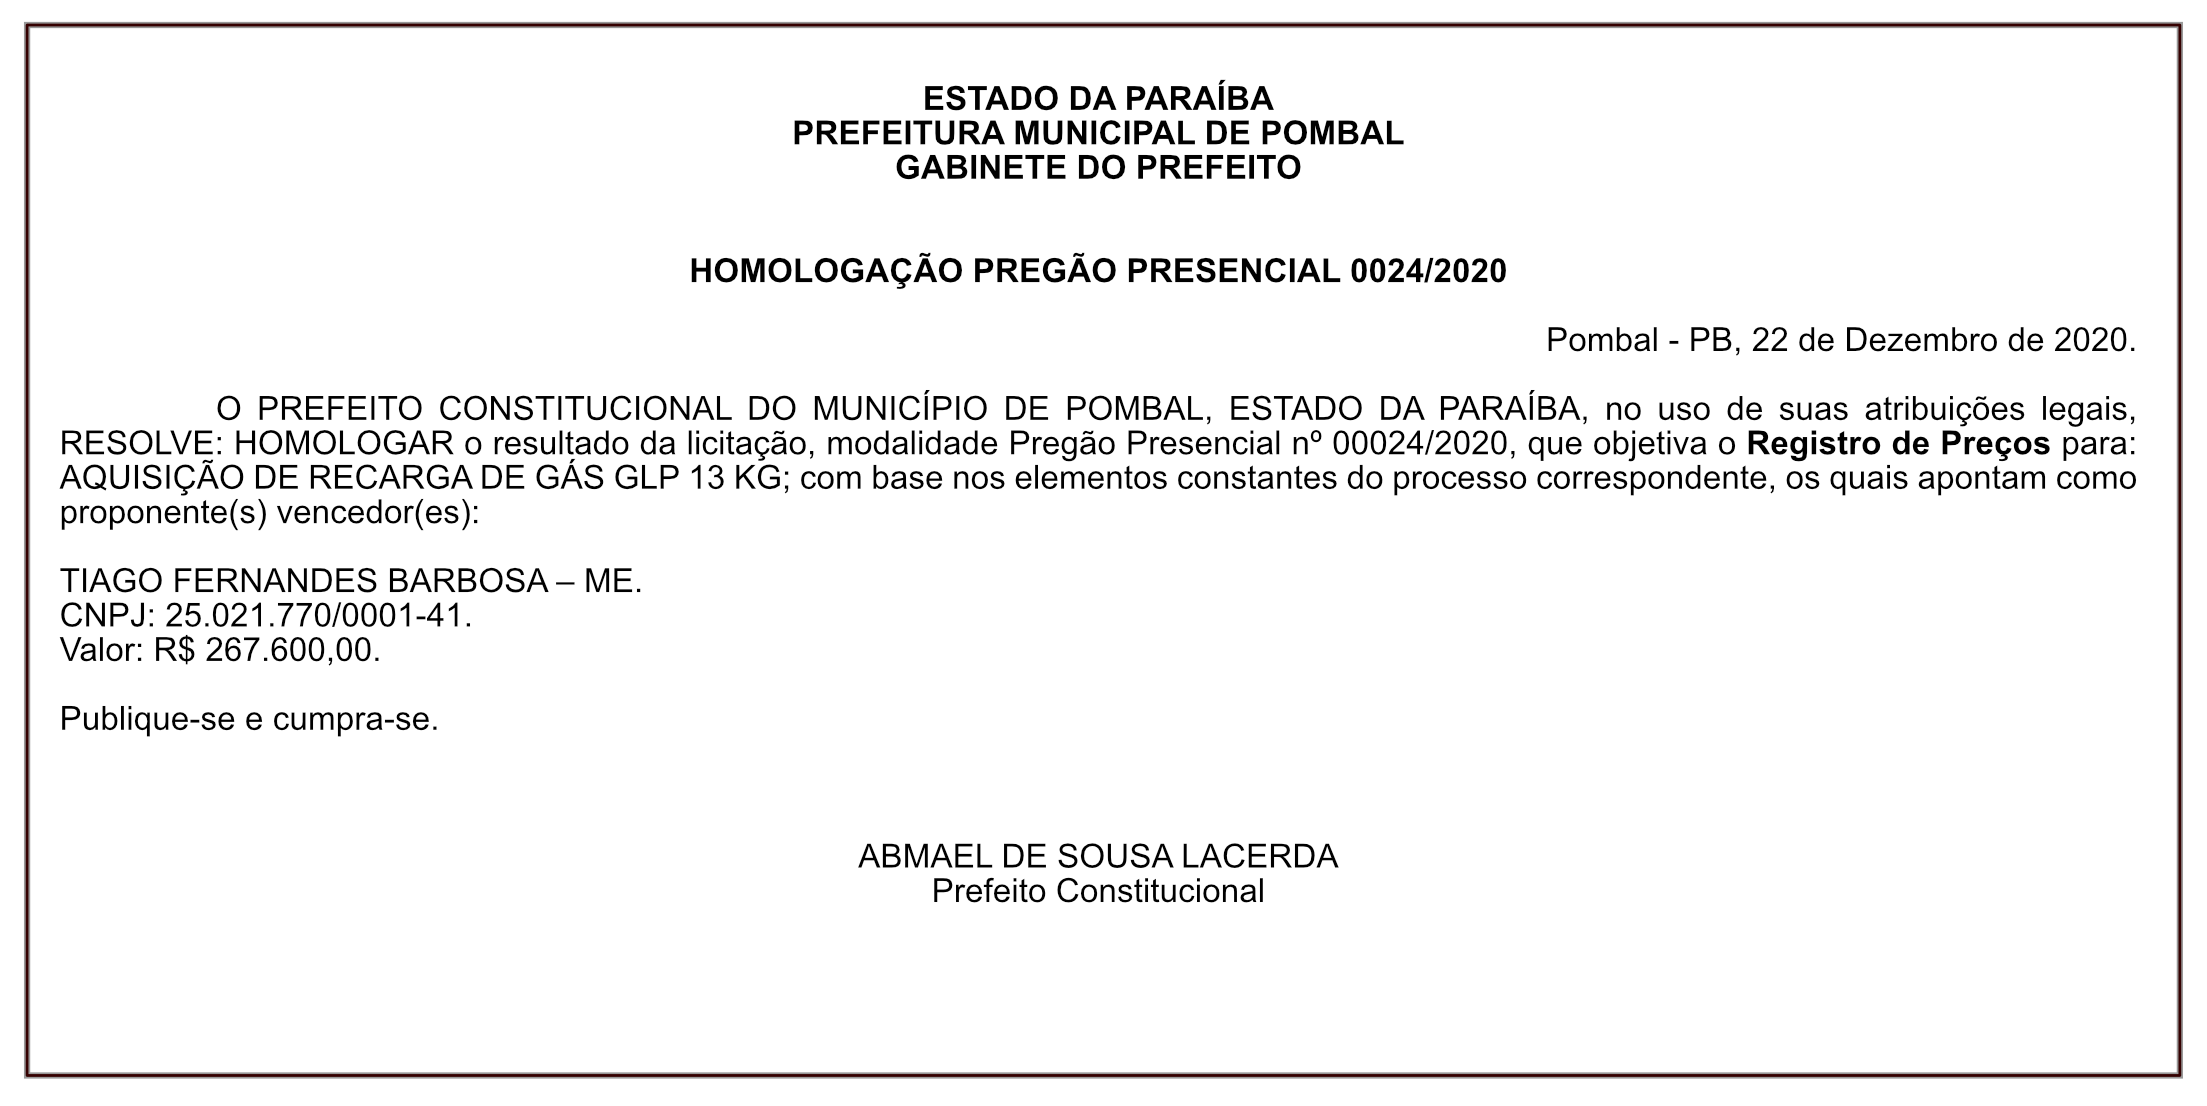 PREFEITURA MUNICIPAL DE POMBAL – HOMOLOGAÇÃO PREGÃO PRESENCIAL 0024/2020